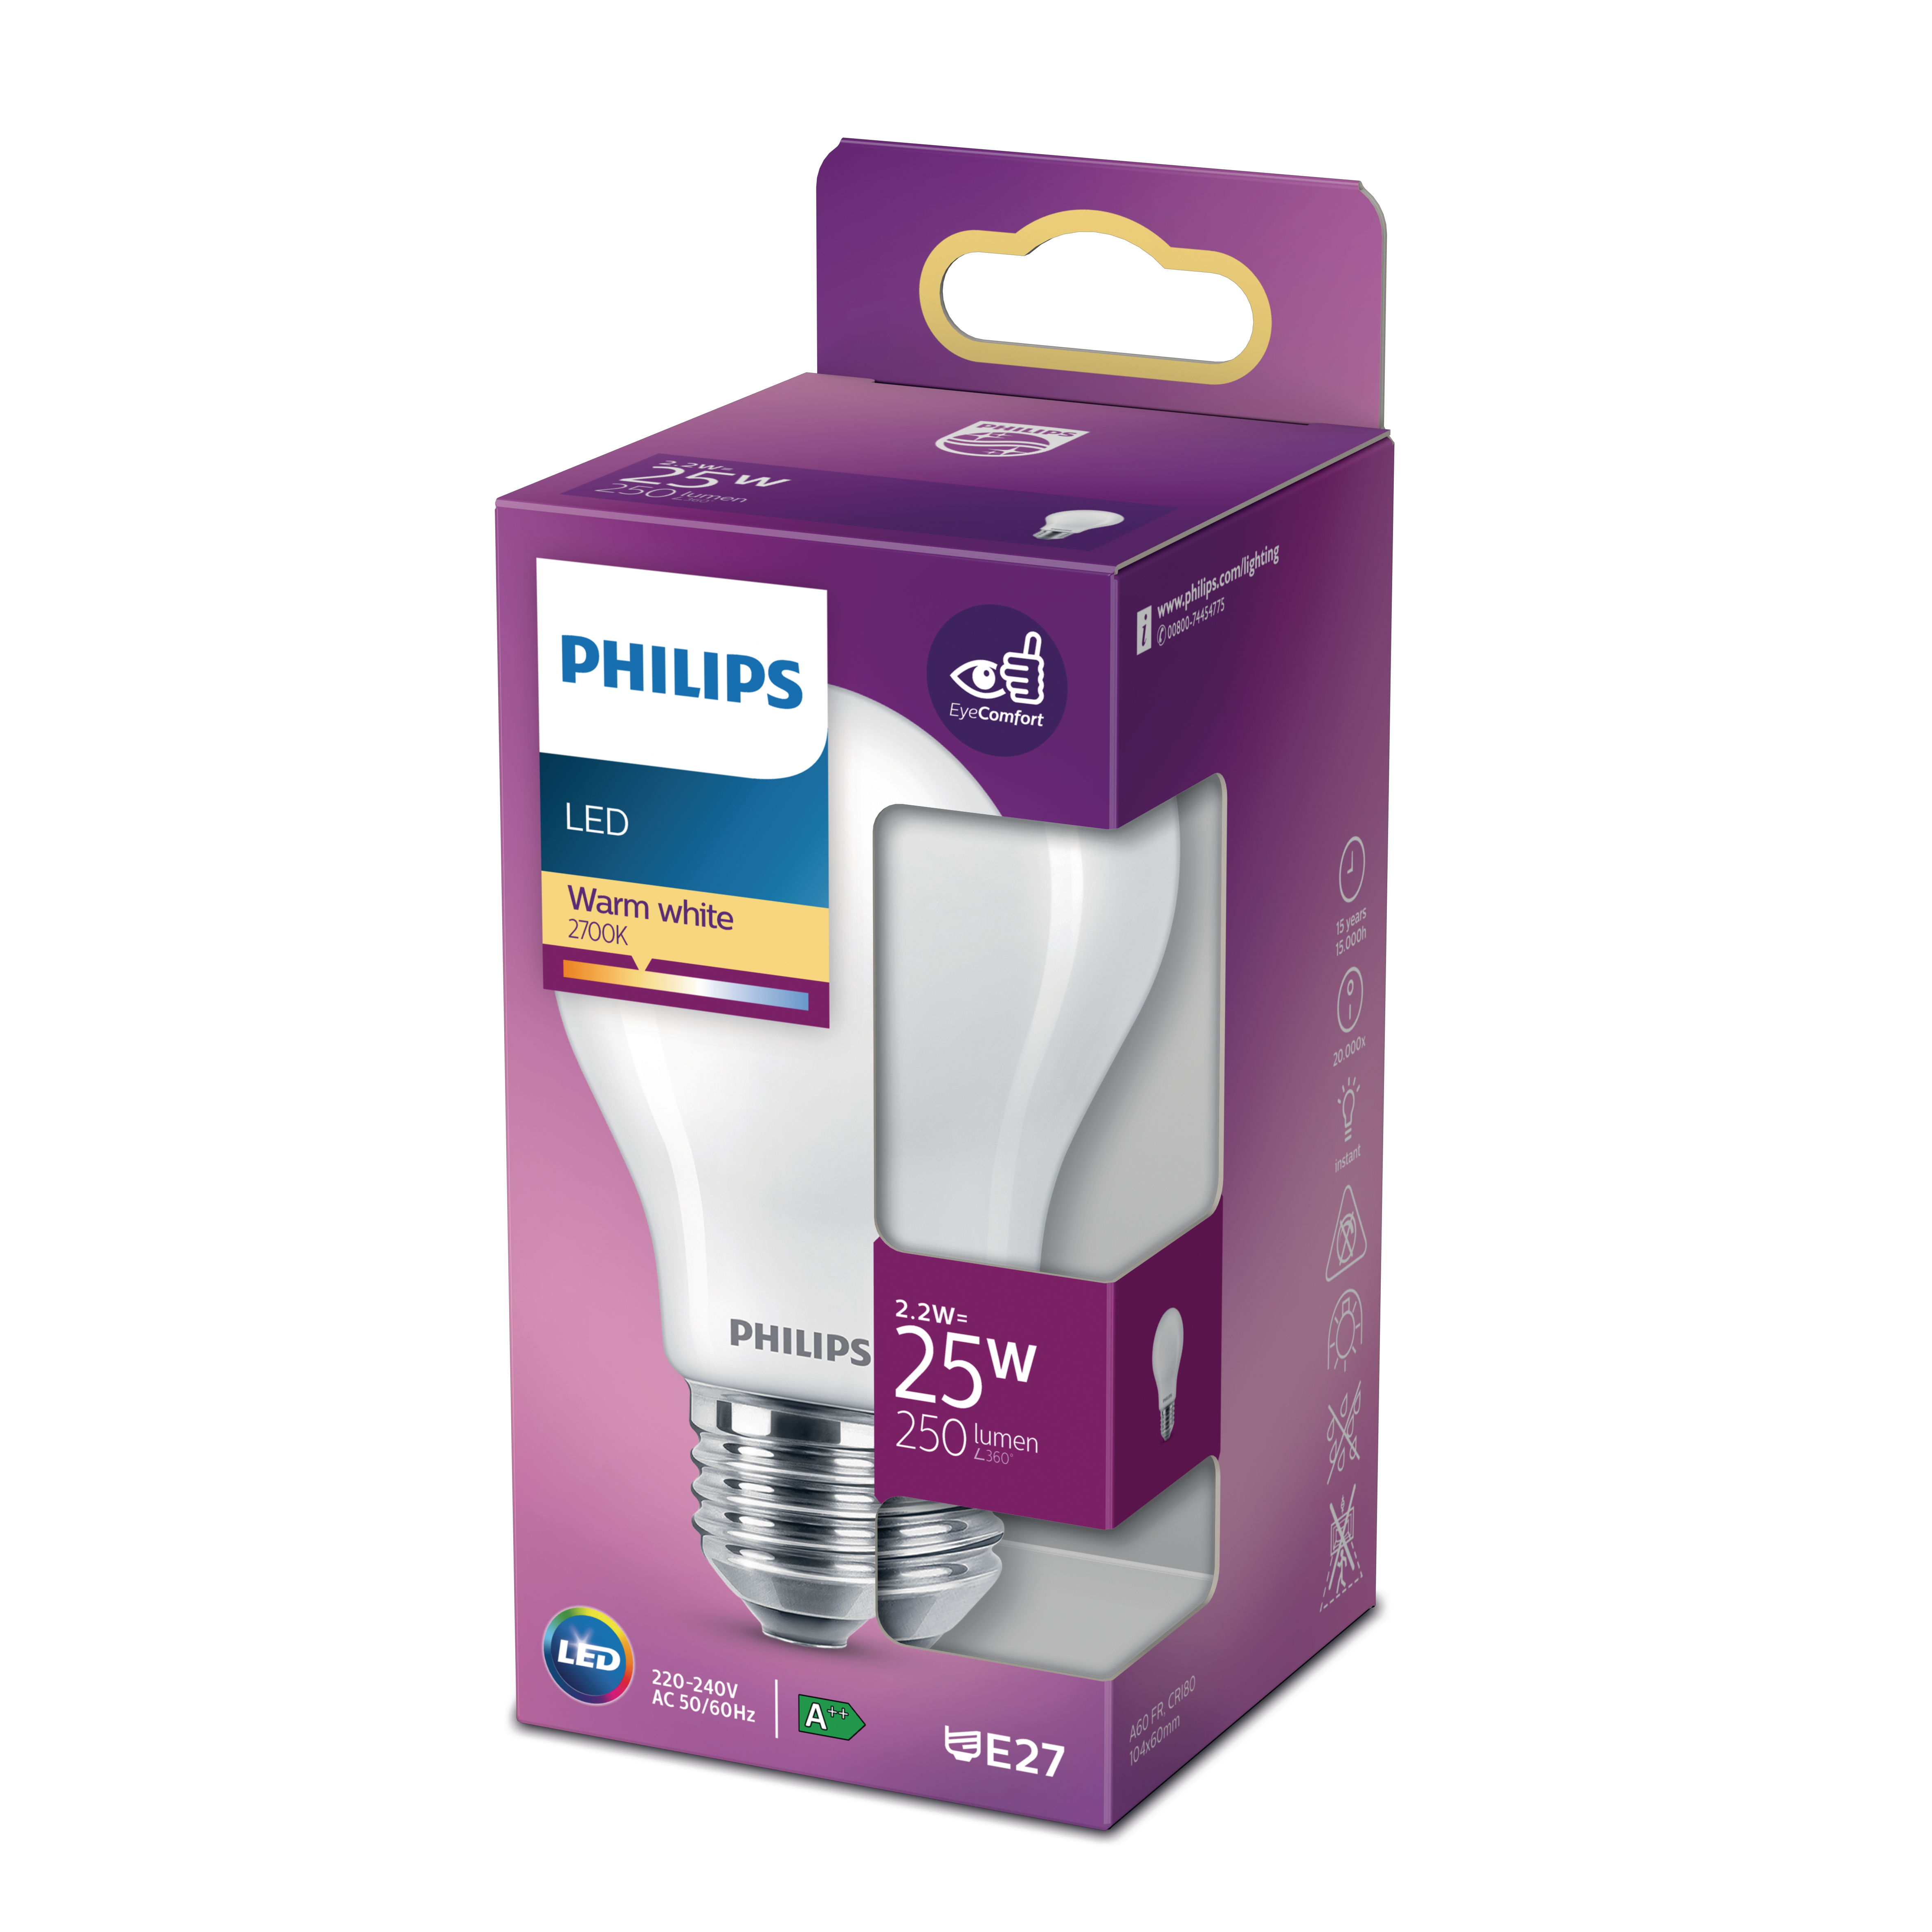 PHILIPS LEDclassic LED warmweiß ersetzt Lampe 25W Lampe